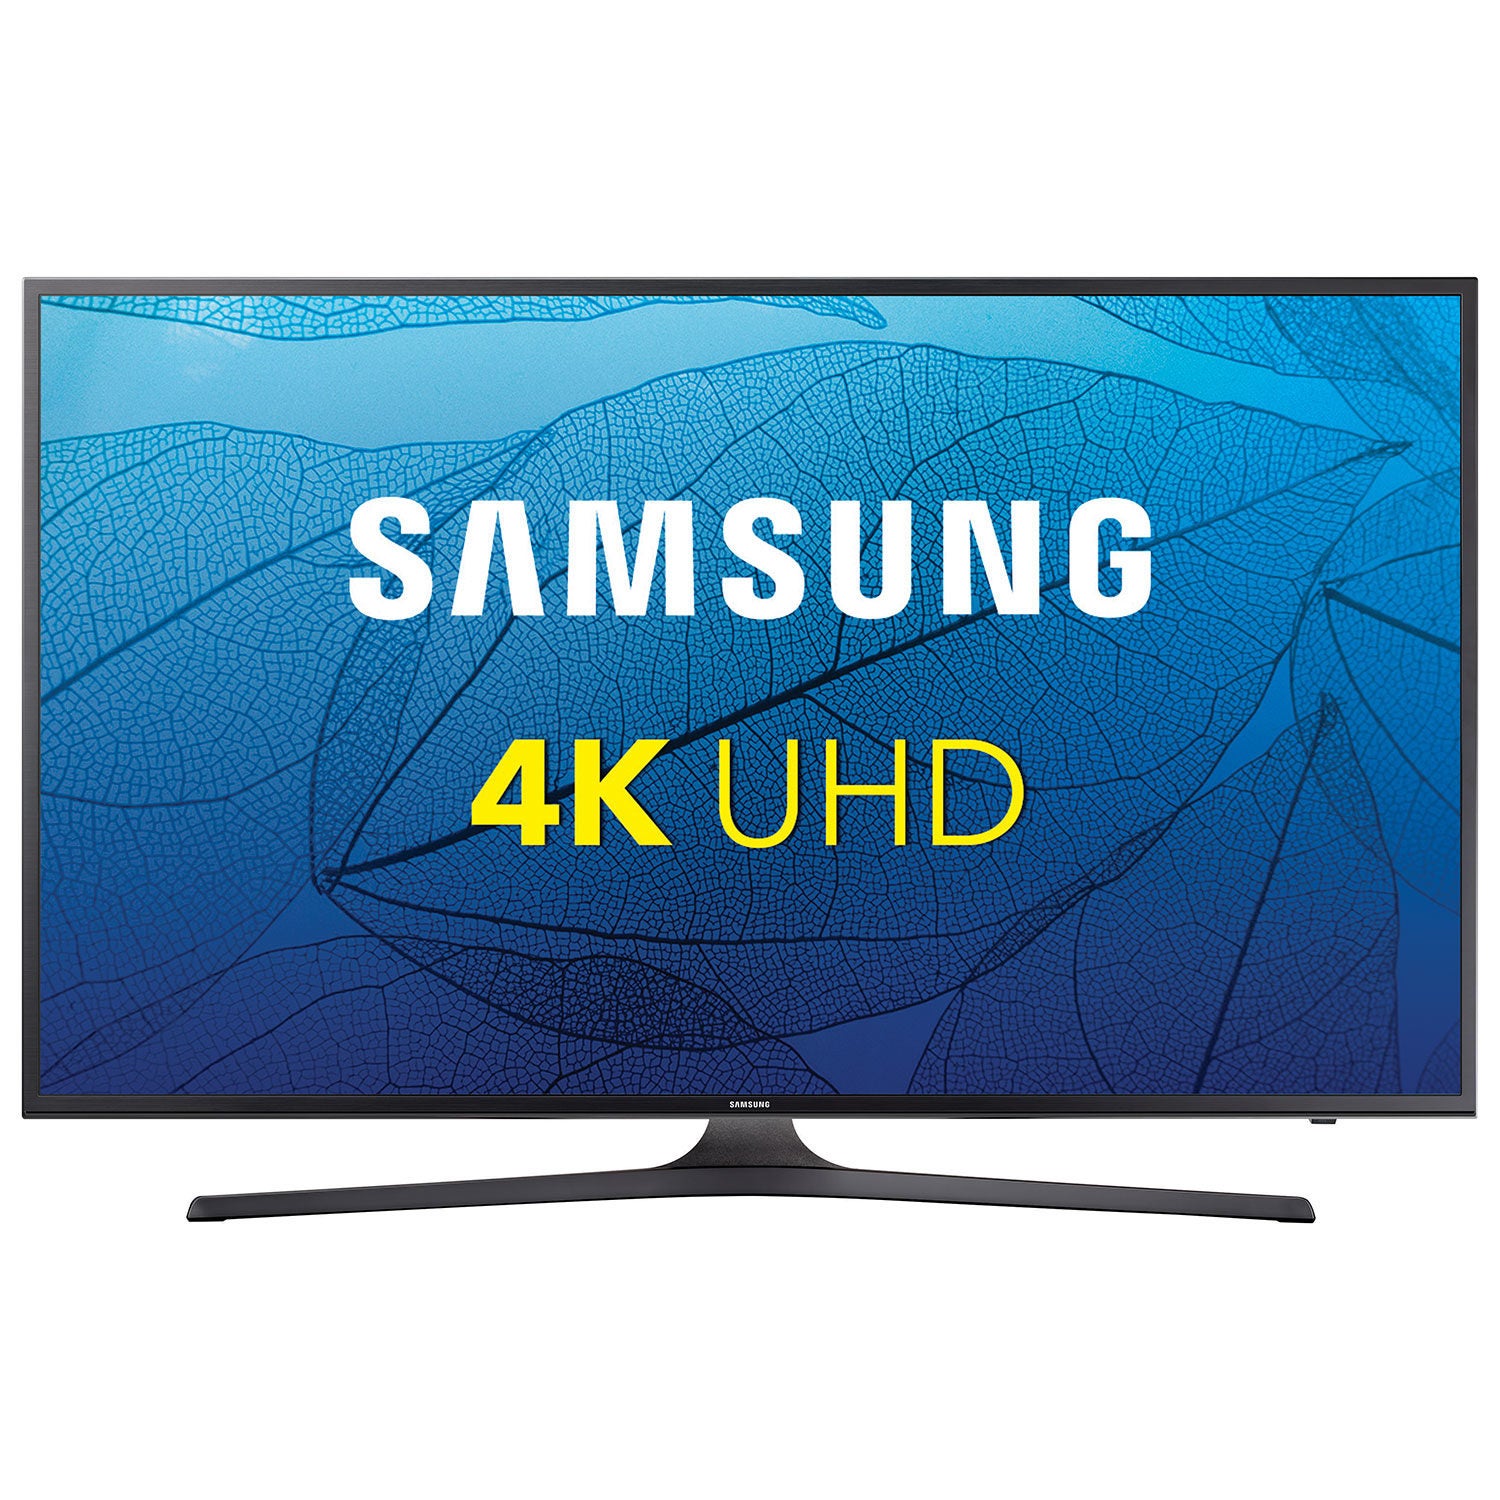 Samsung smart tv. Samsung 4k Smart TV. Samsung 50 4k. Samsung Smart 50. Samsung 50" 4k изогнутый Smart UHD HDR.